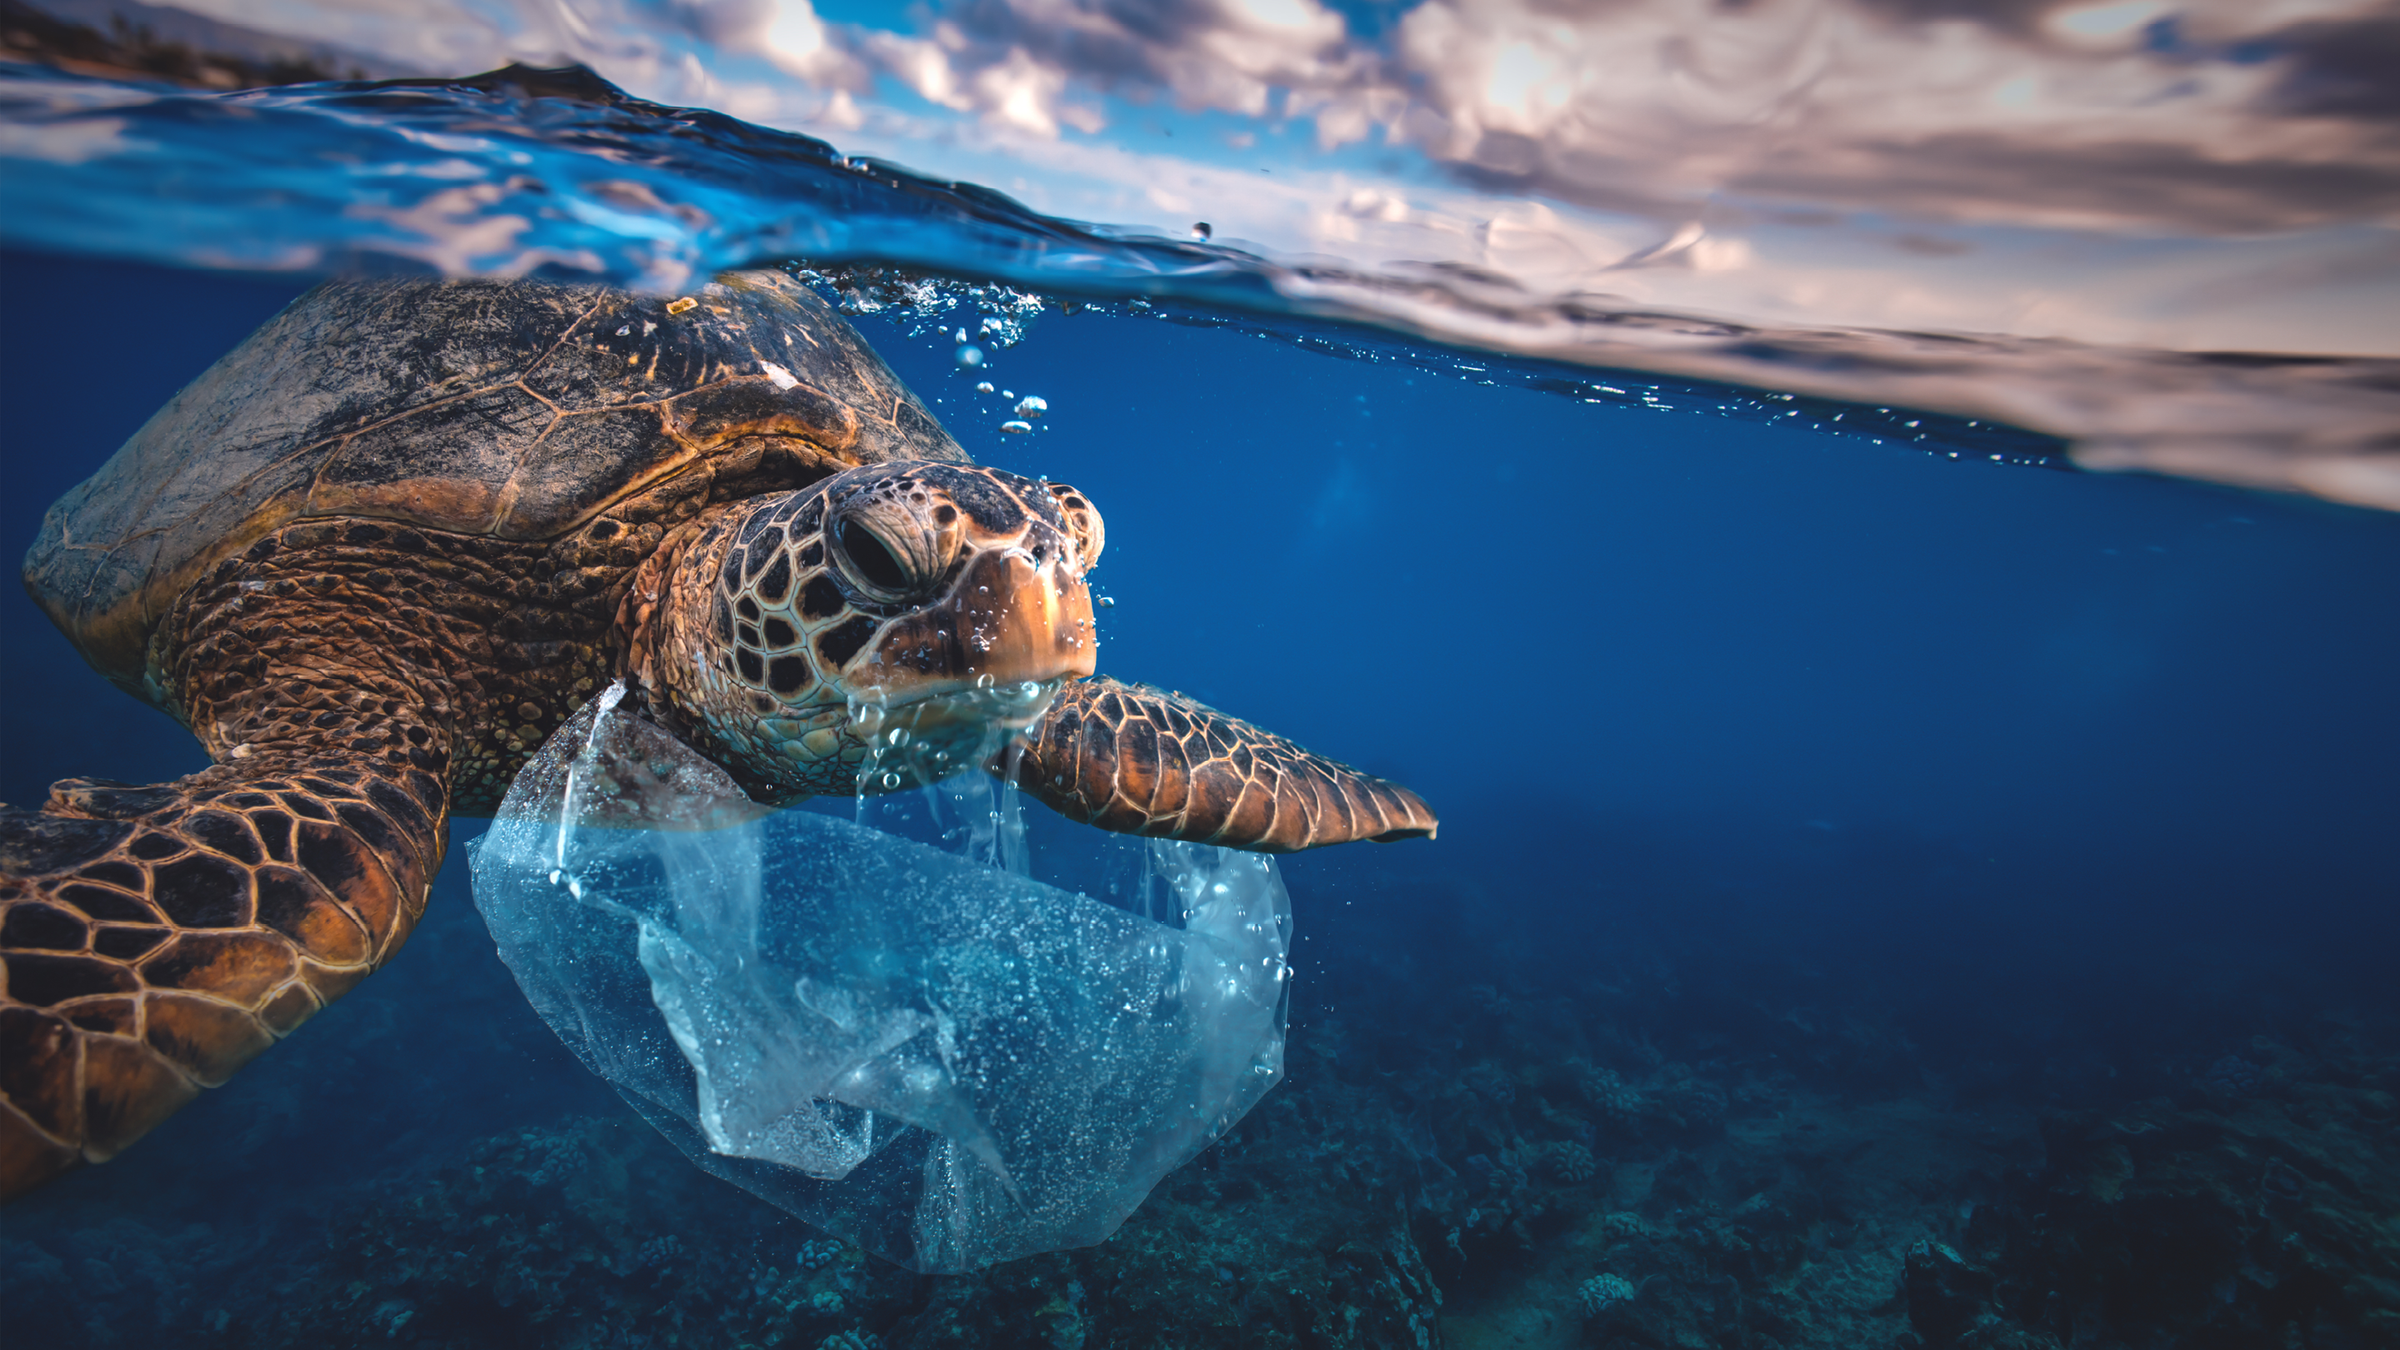 Un'immagine di una tartaruga che nuota in spazzatura, con un sacchetto di plastica avvolto intorno.